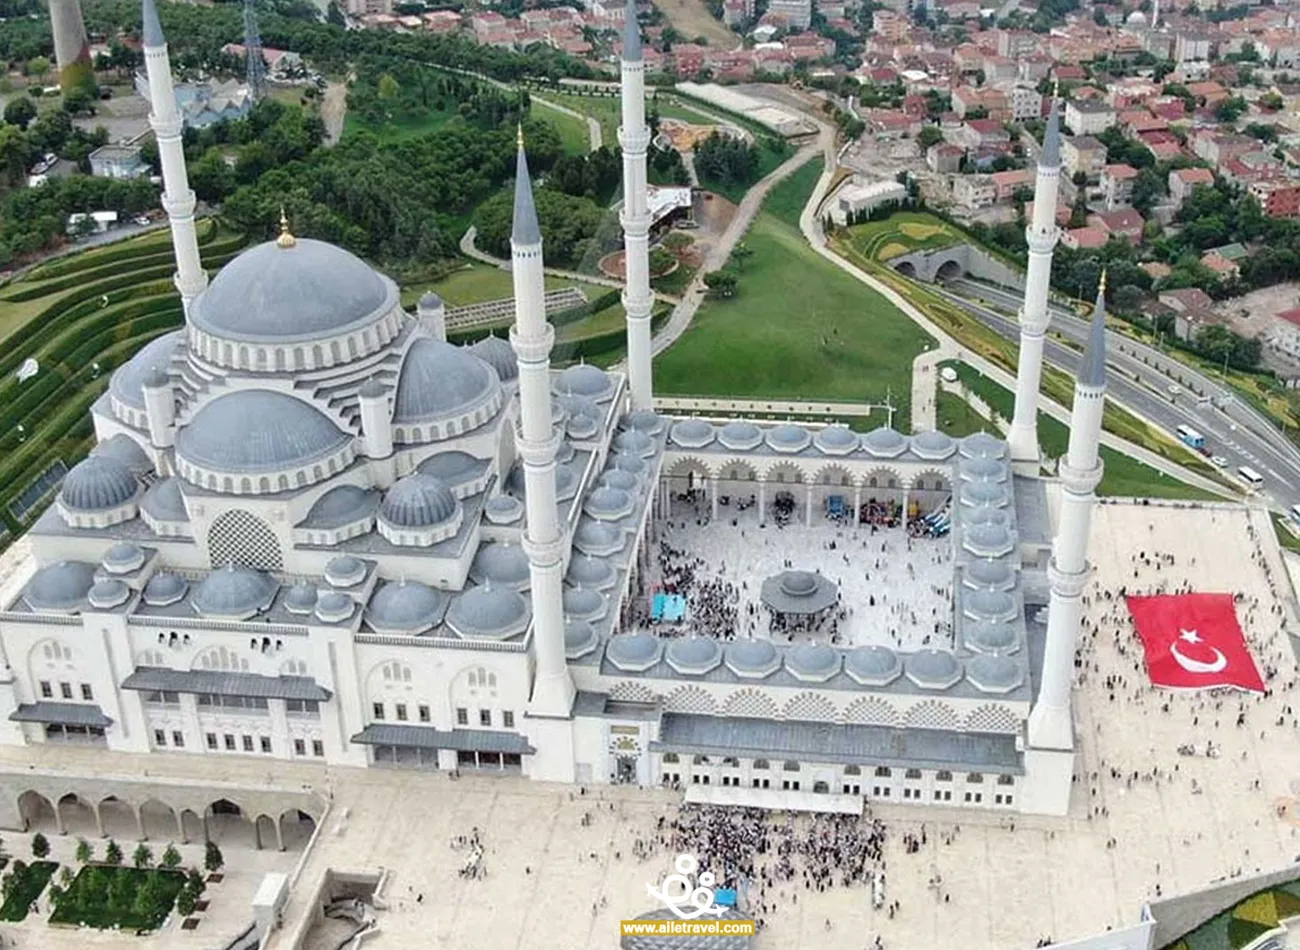 جامع تشامليجا من الأعلى والعلم التركي بجانبه